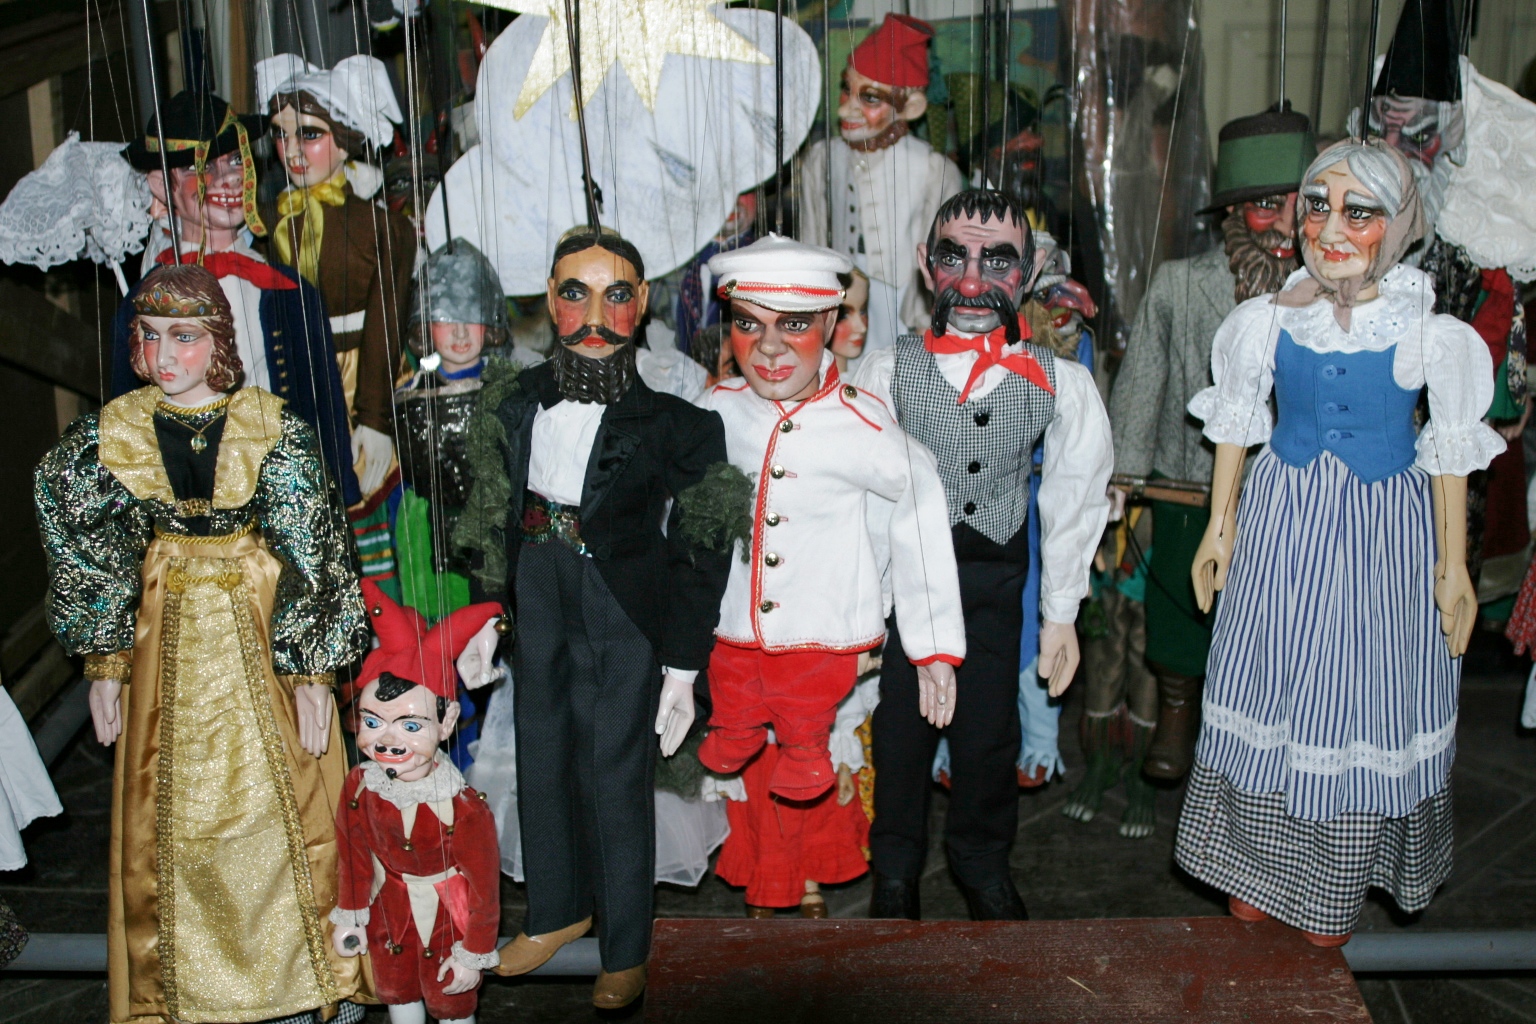 Prácheňské marionety - oživlá lidová kultura